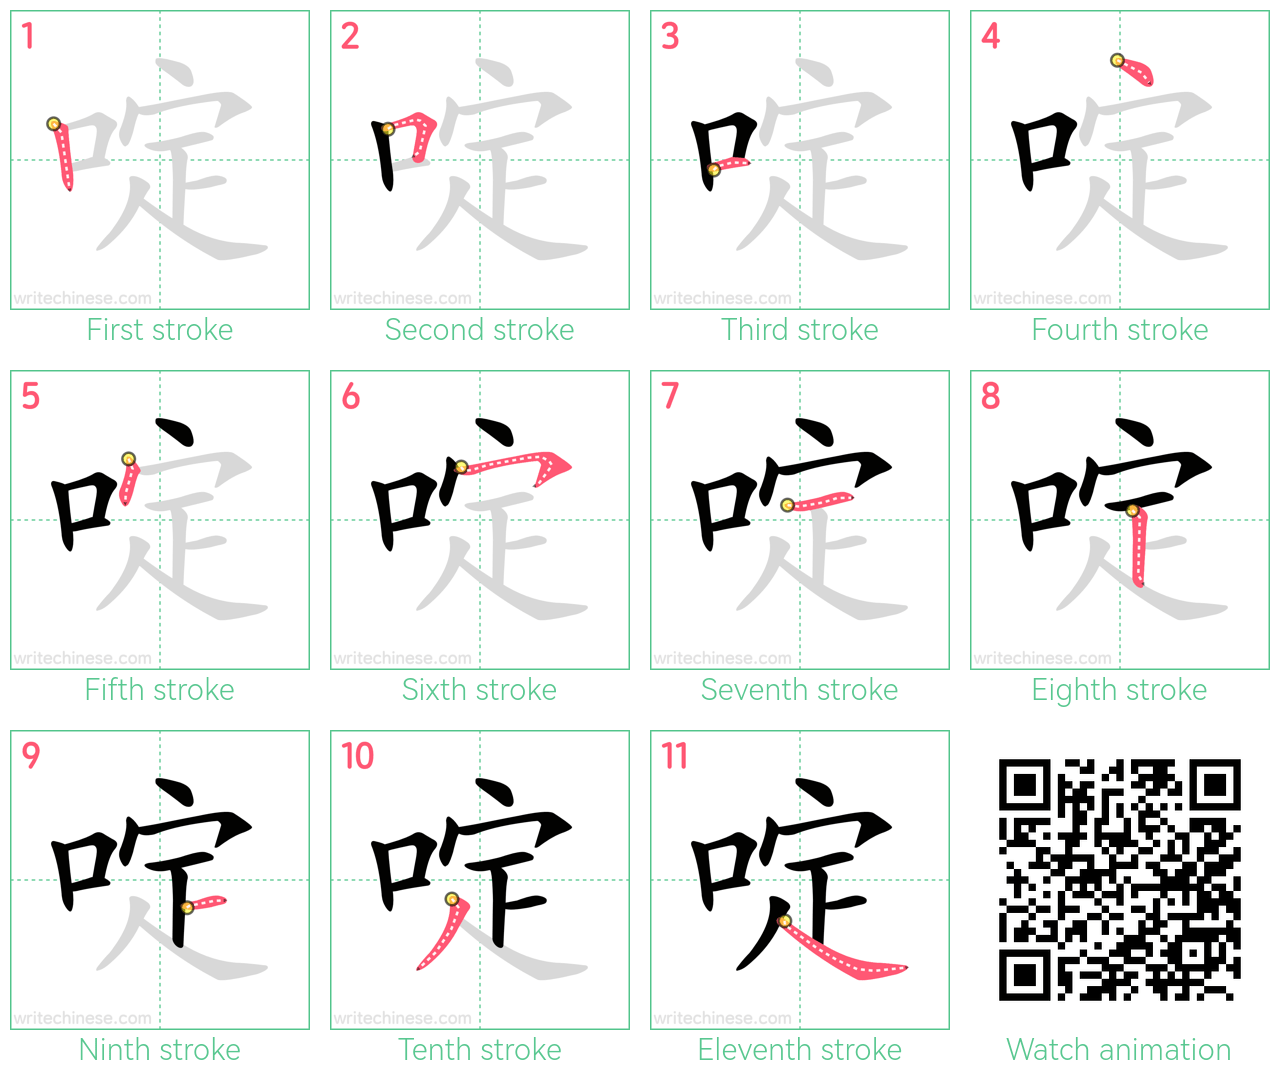 啶 step-by-step stroke order diagrams